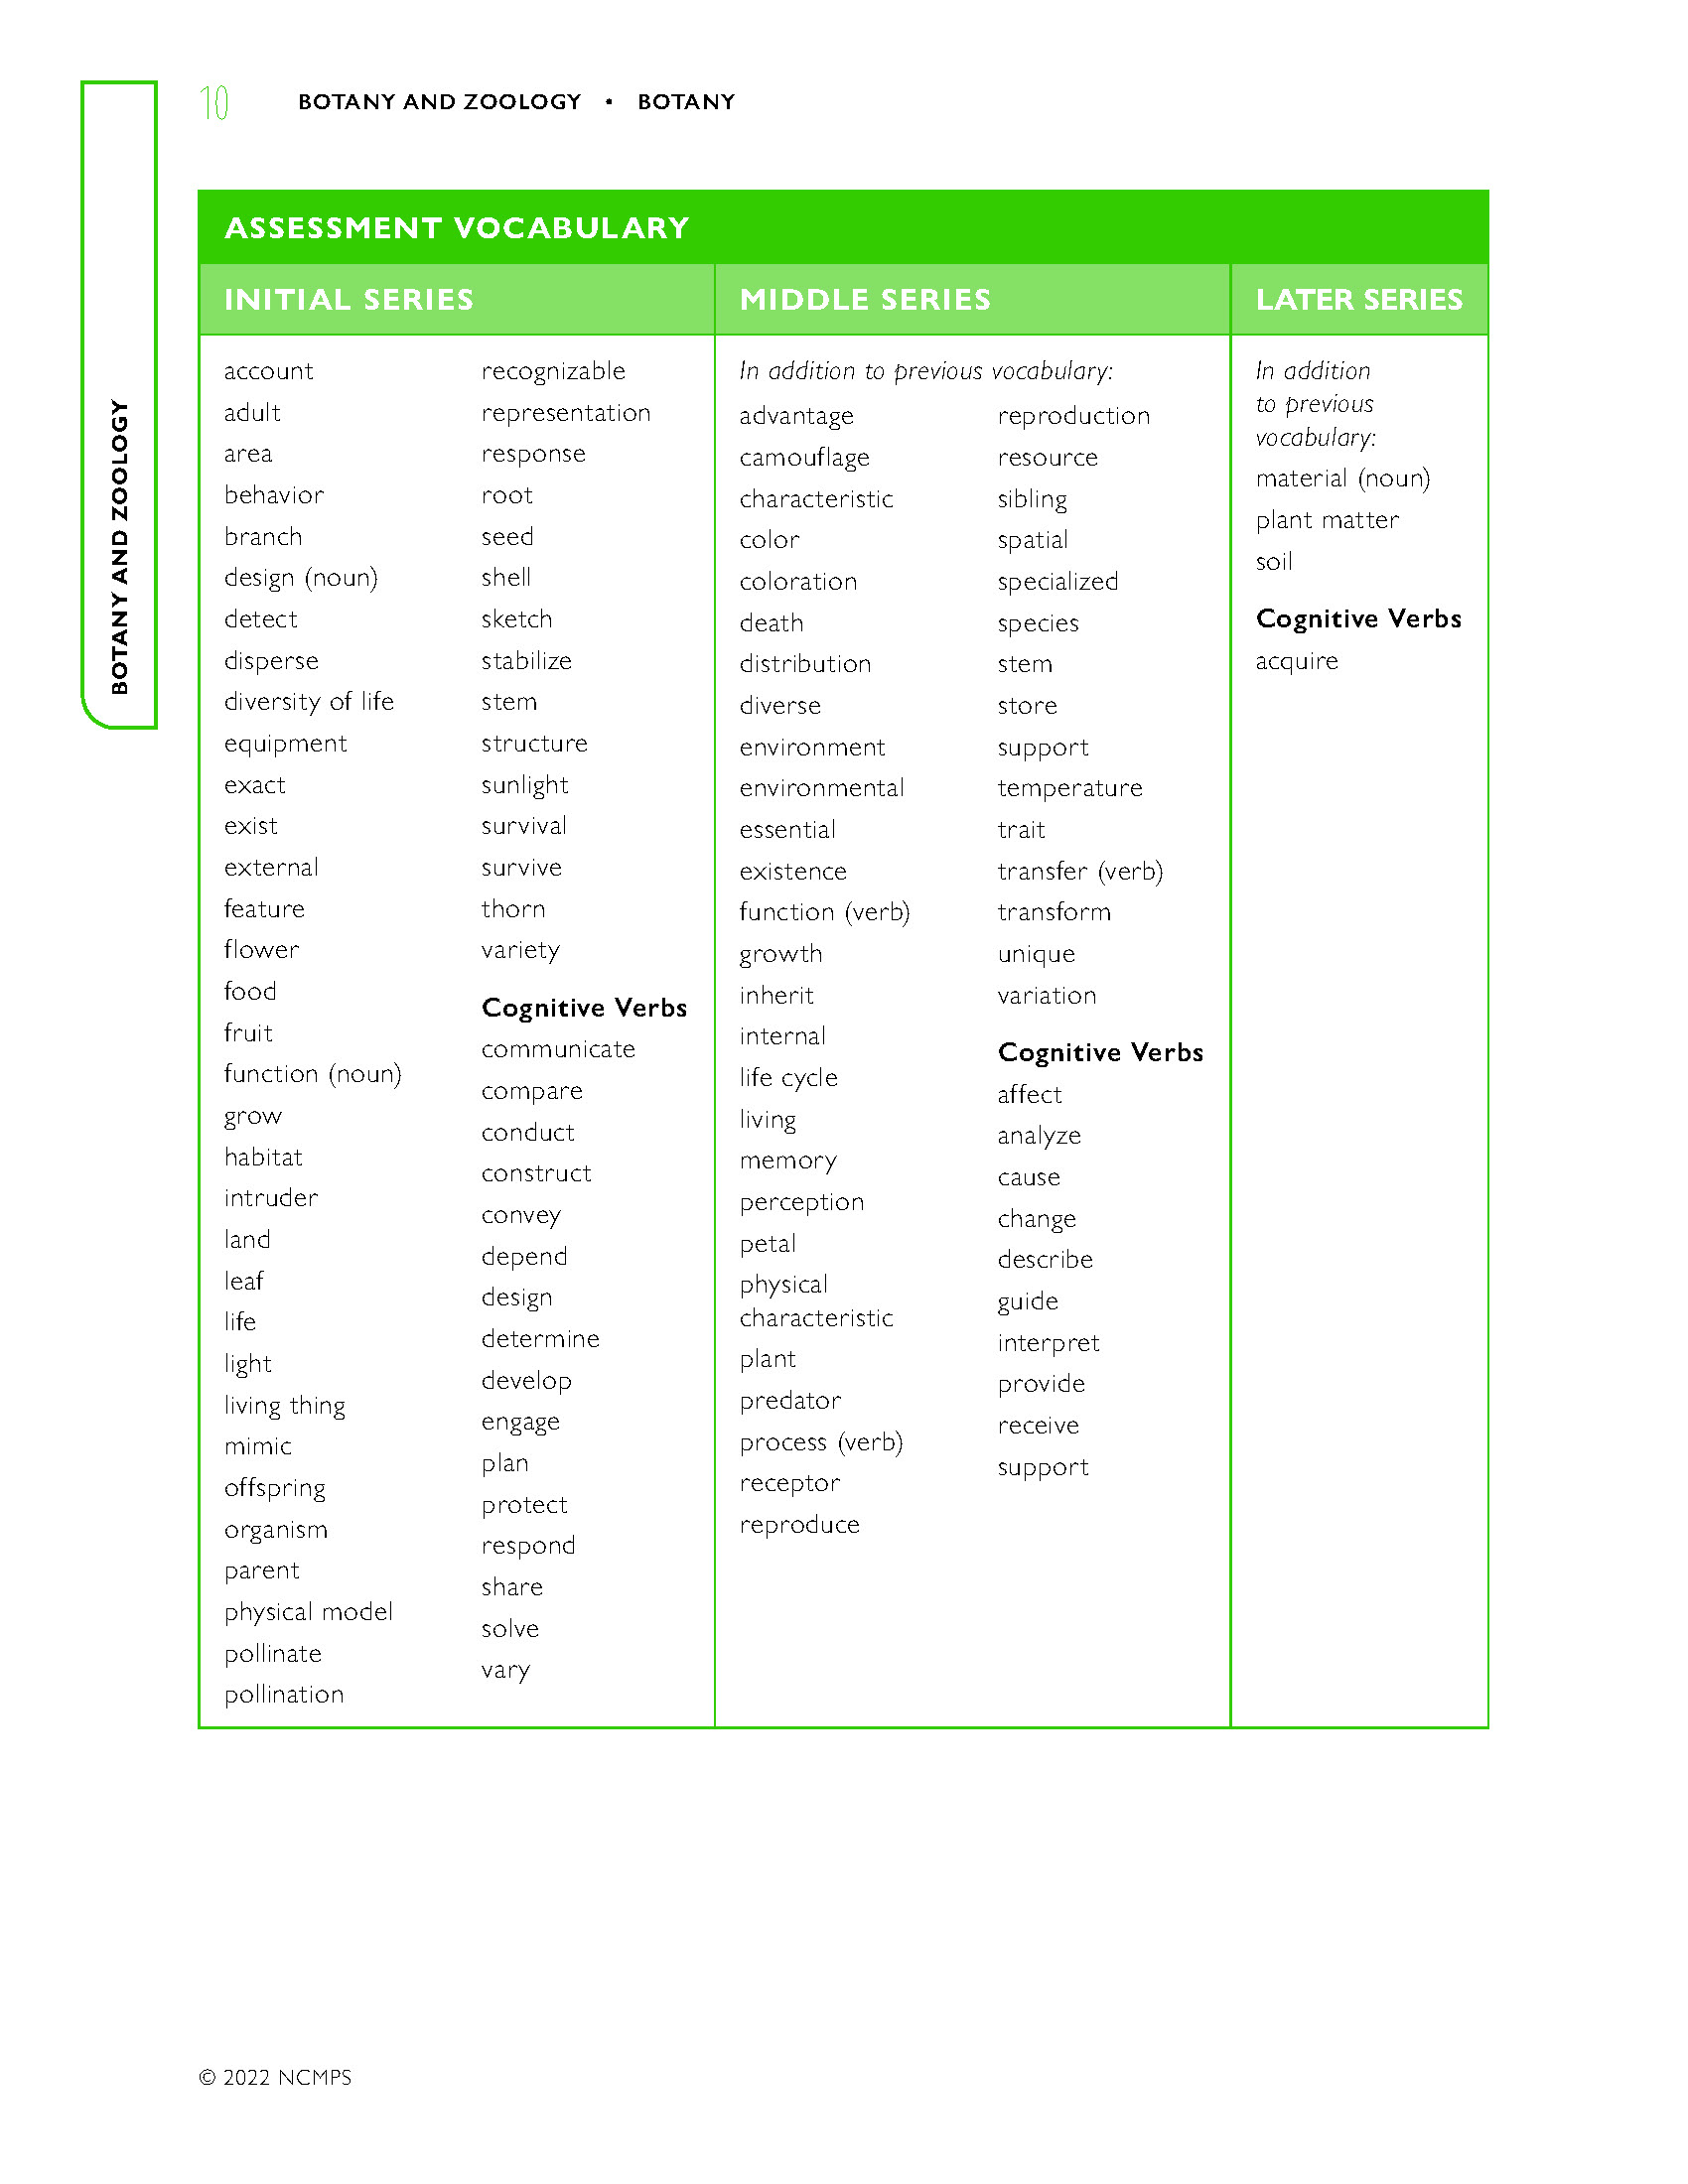 Assessment Vocabulary